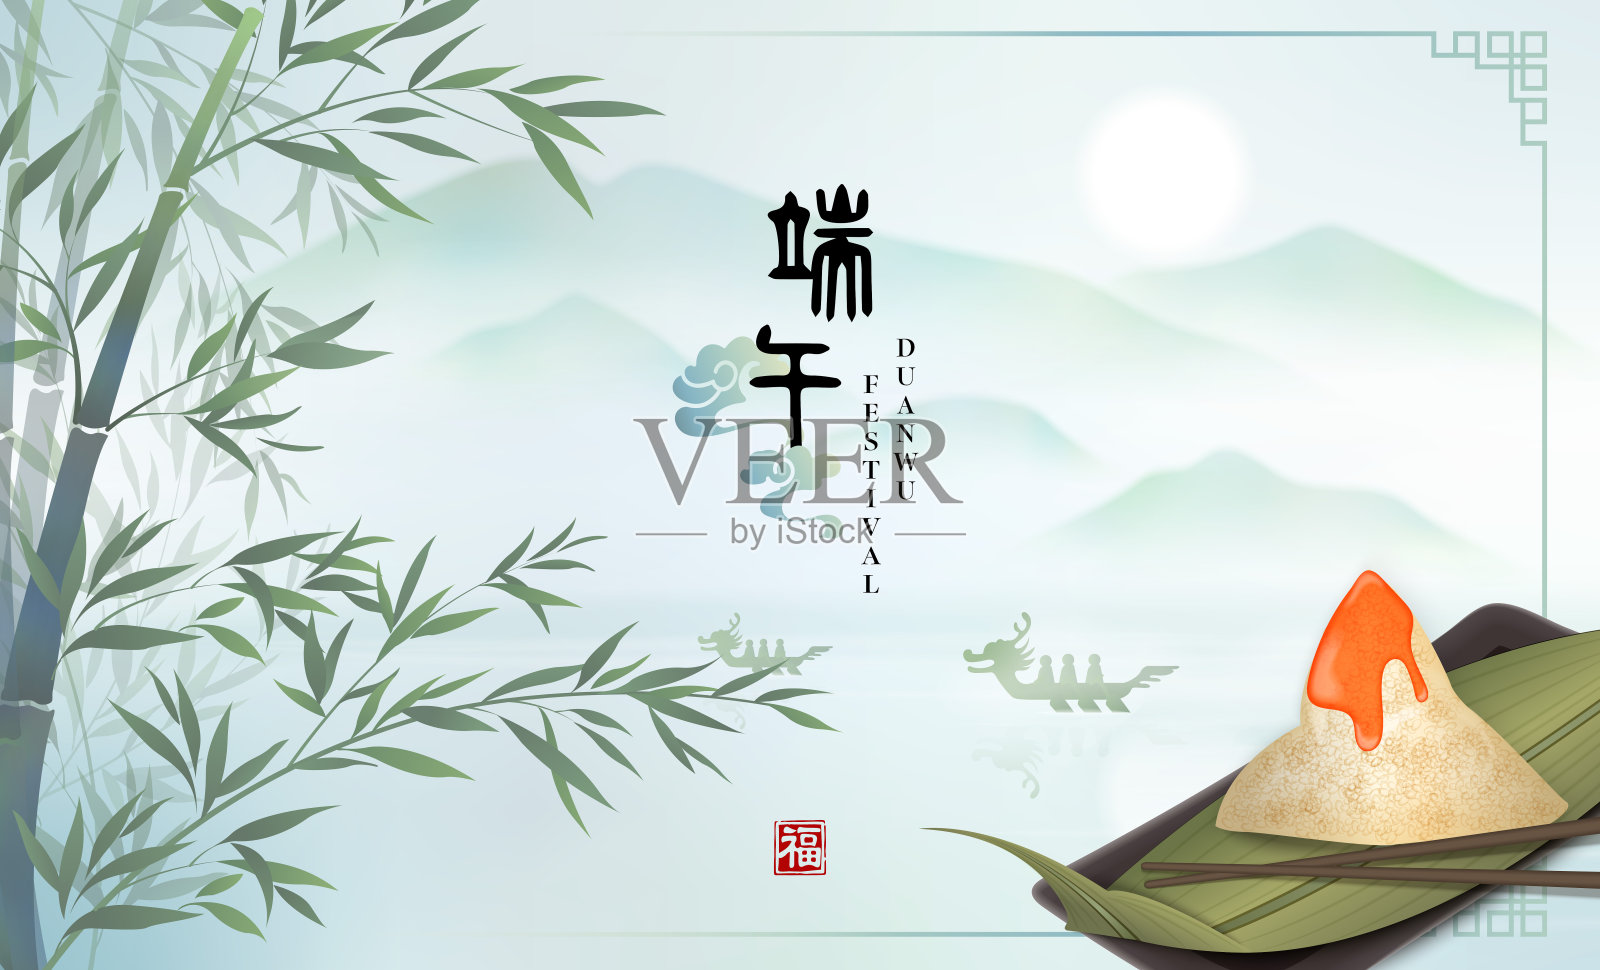 快乐端午节背景模板传统食物粽子和竹叶与优雅的自然景观湖山景。中文翻译:端午和祝福设计模板素材